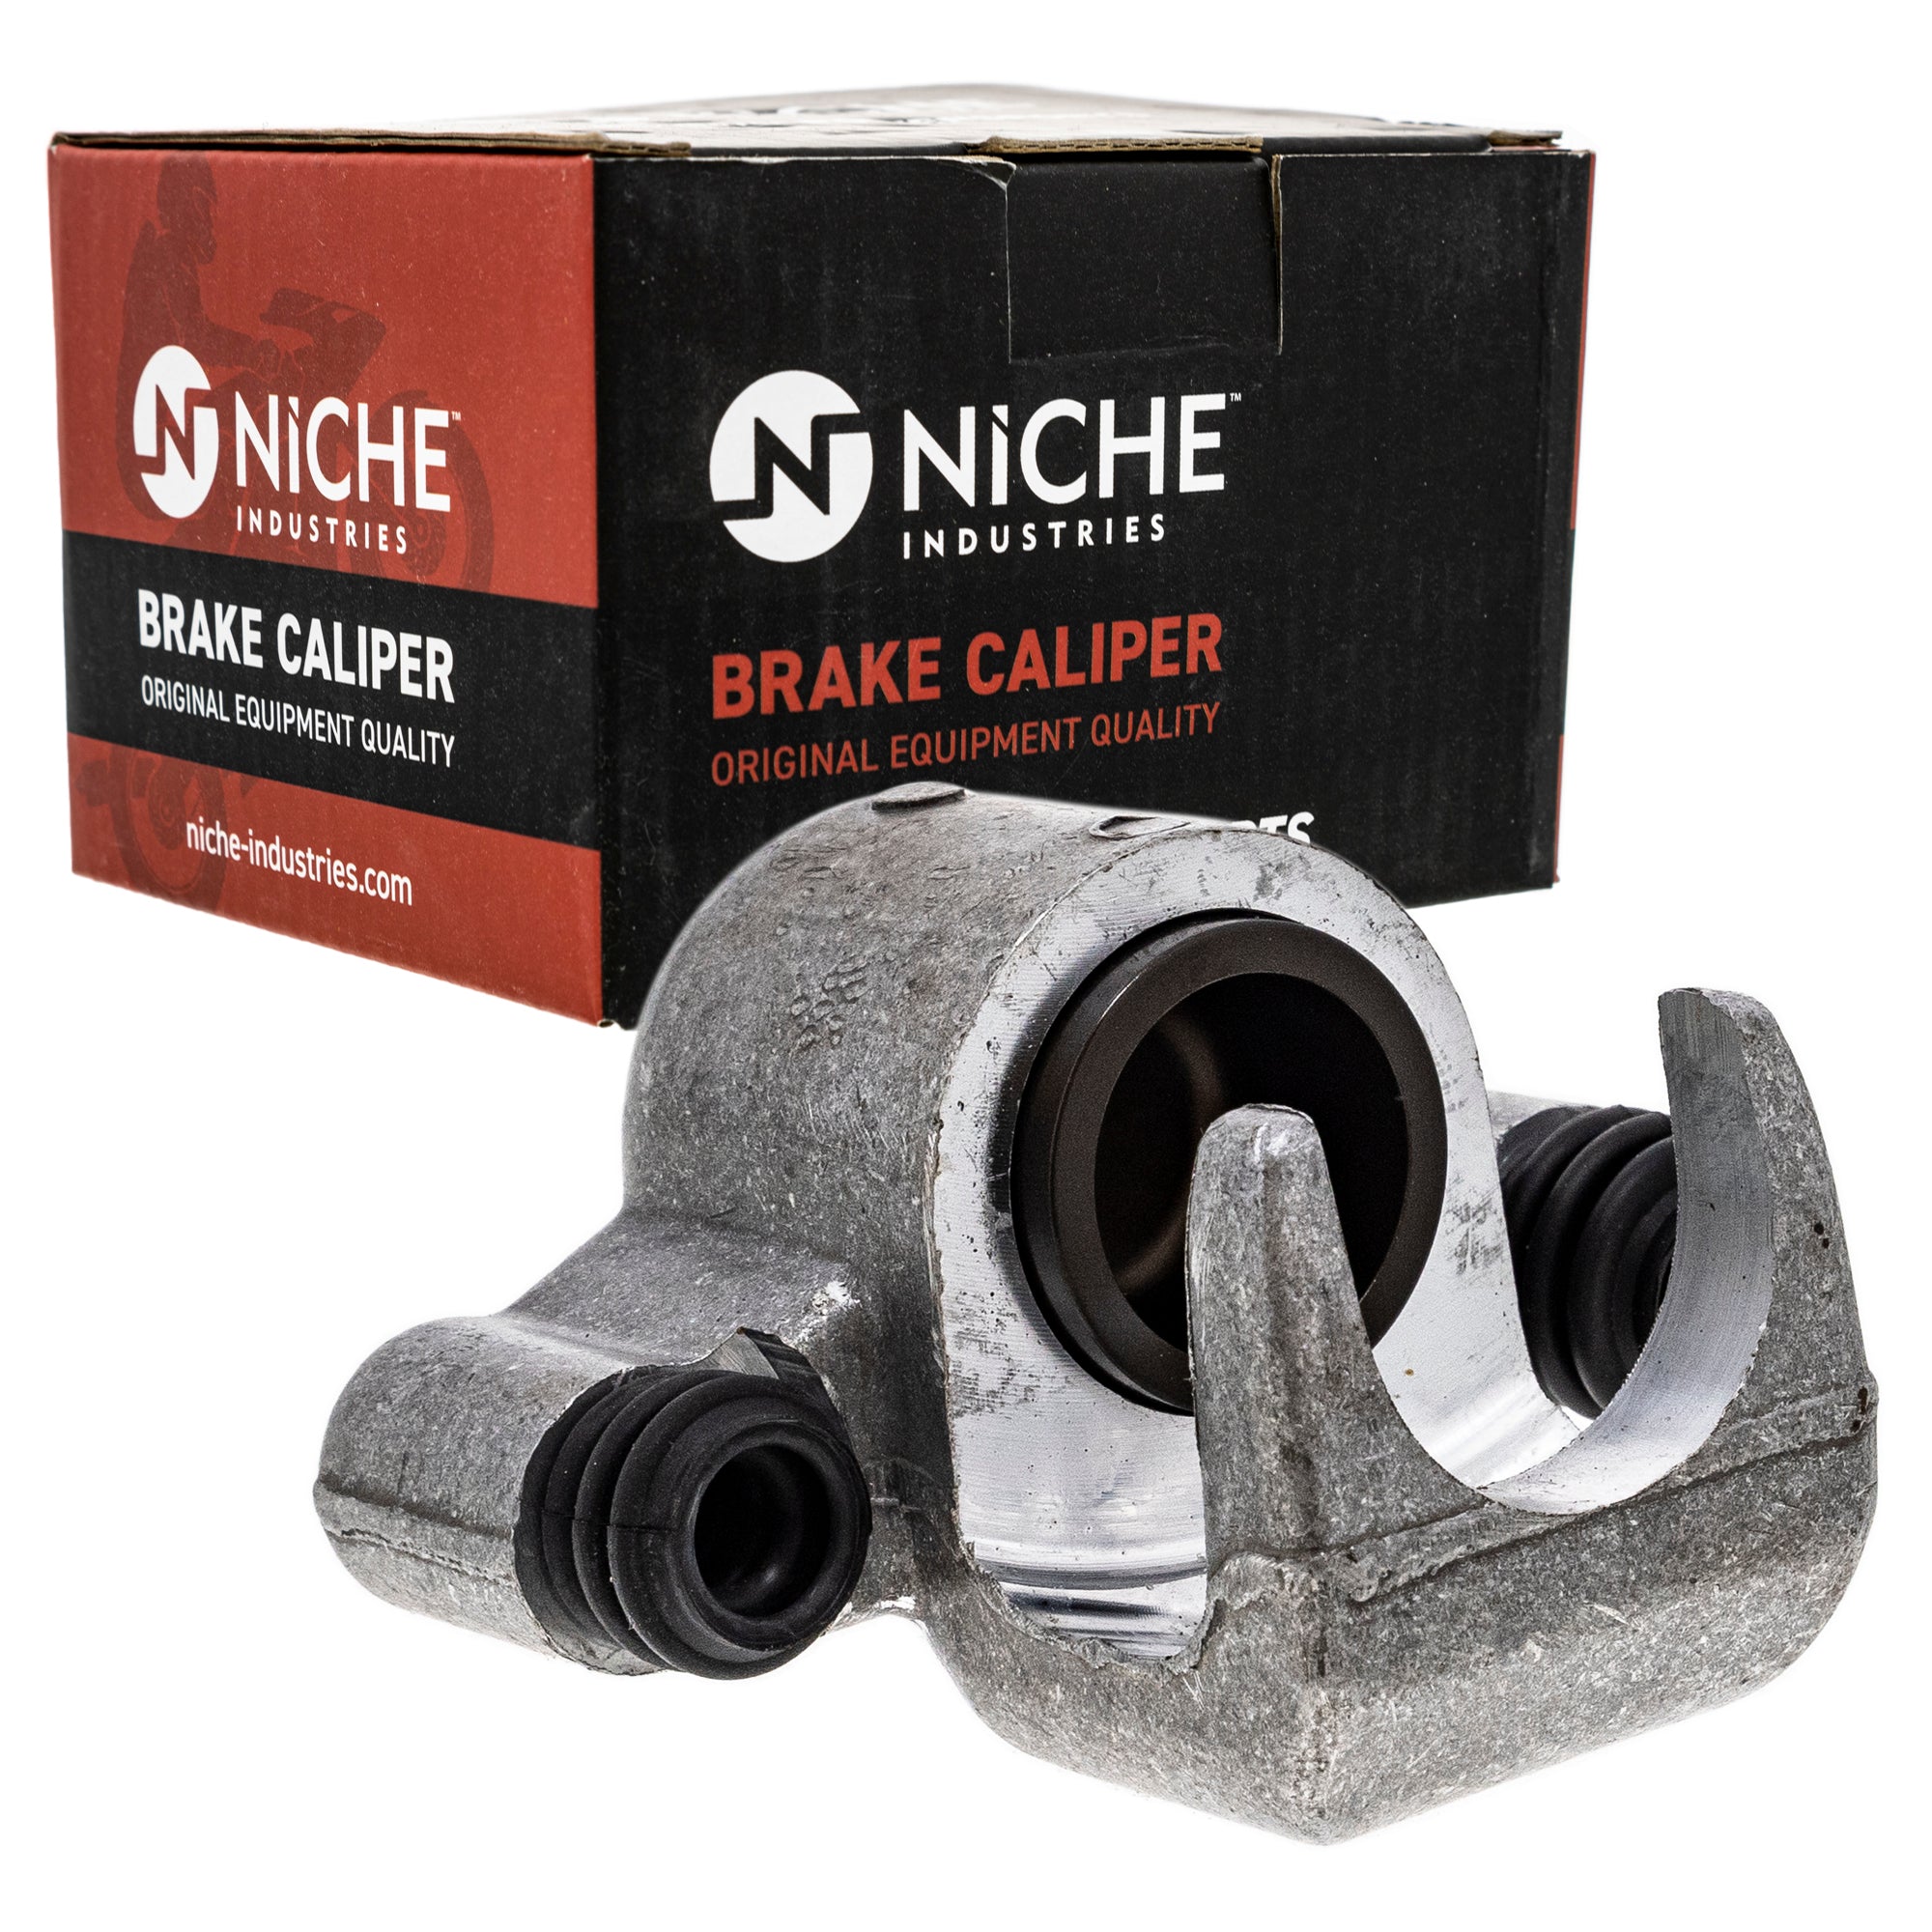 NICHE MK1001027 Brake Caliper Kit